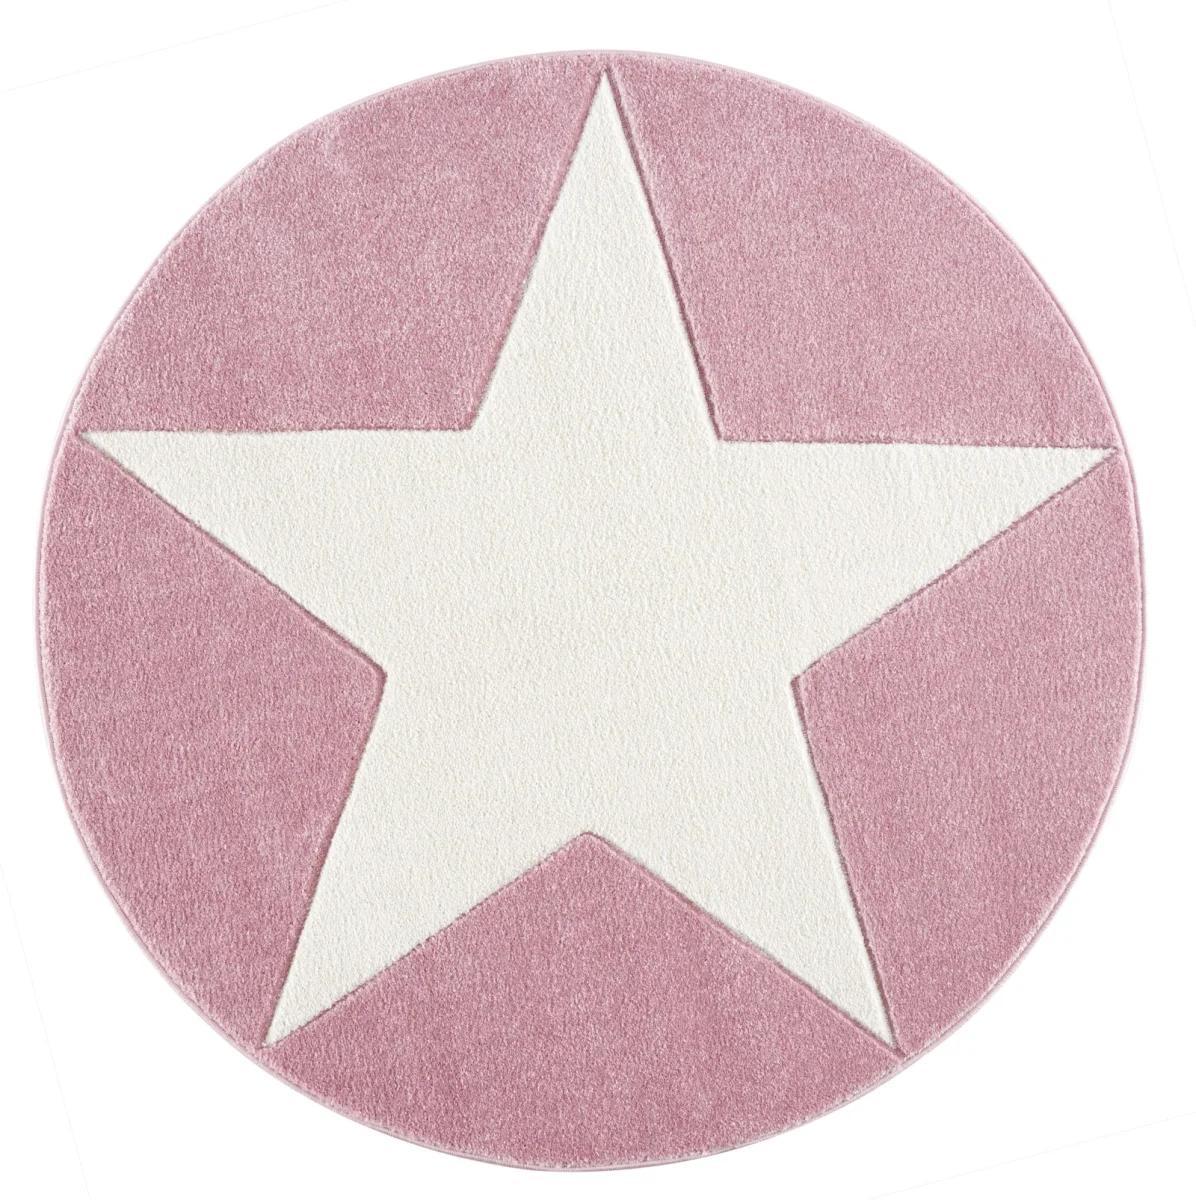 Dywan dziecięcy okrągły Big Star Round Pink 133 cm do pokoju dziecięcego różowy z gwiazdą nr. 3